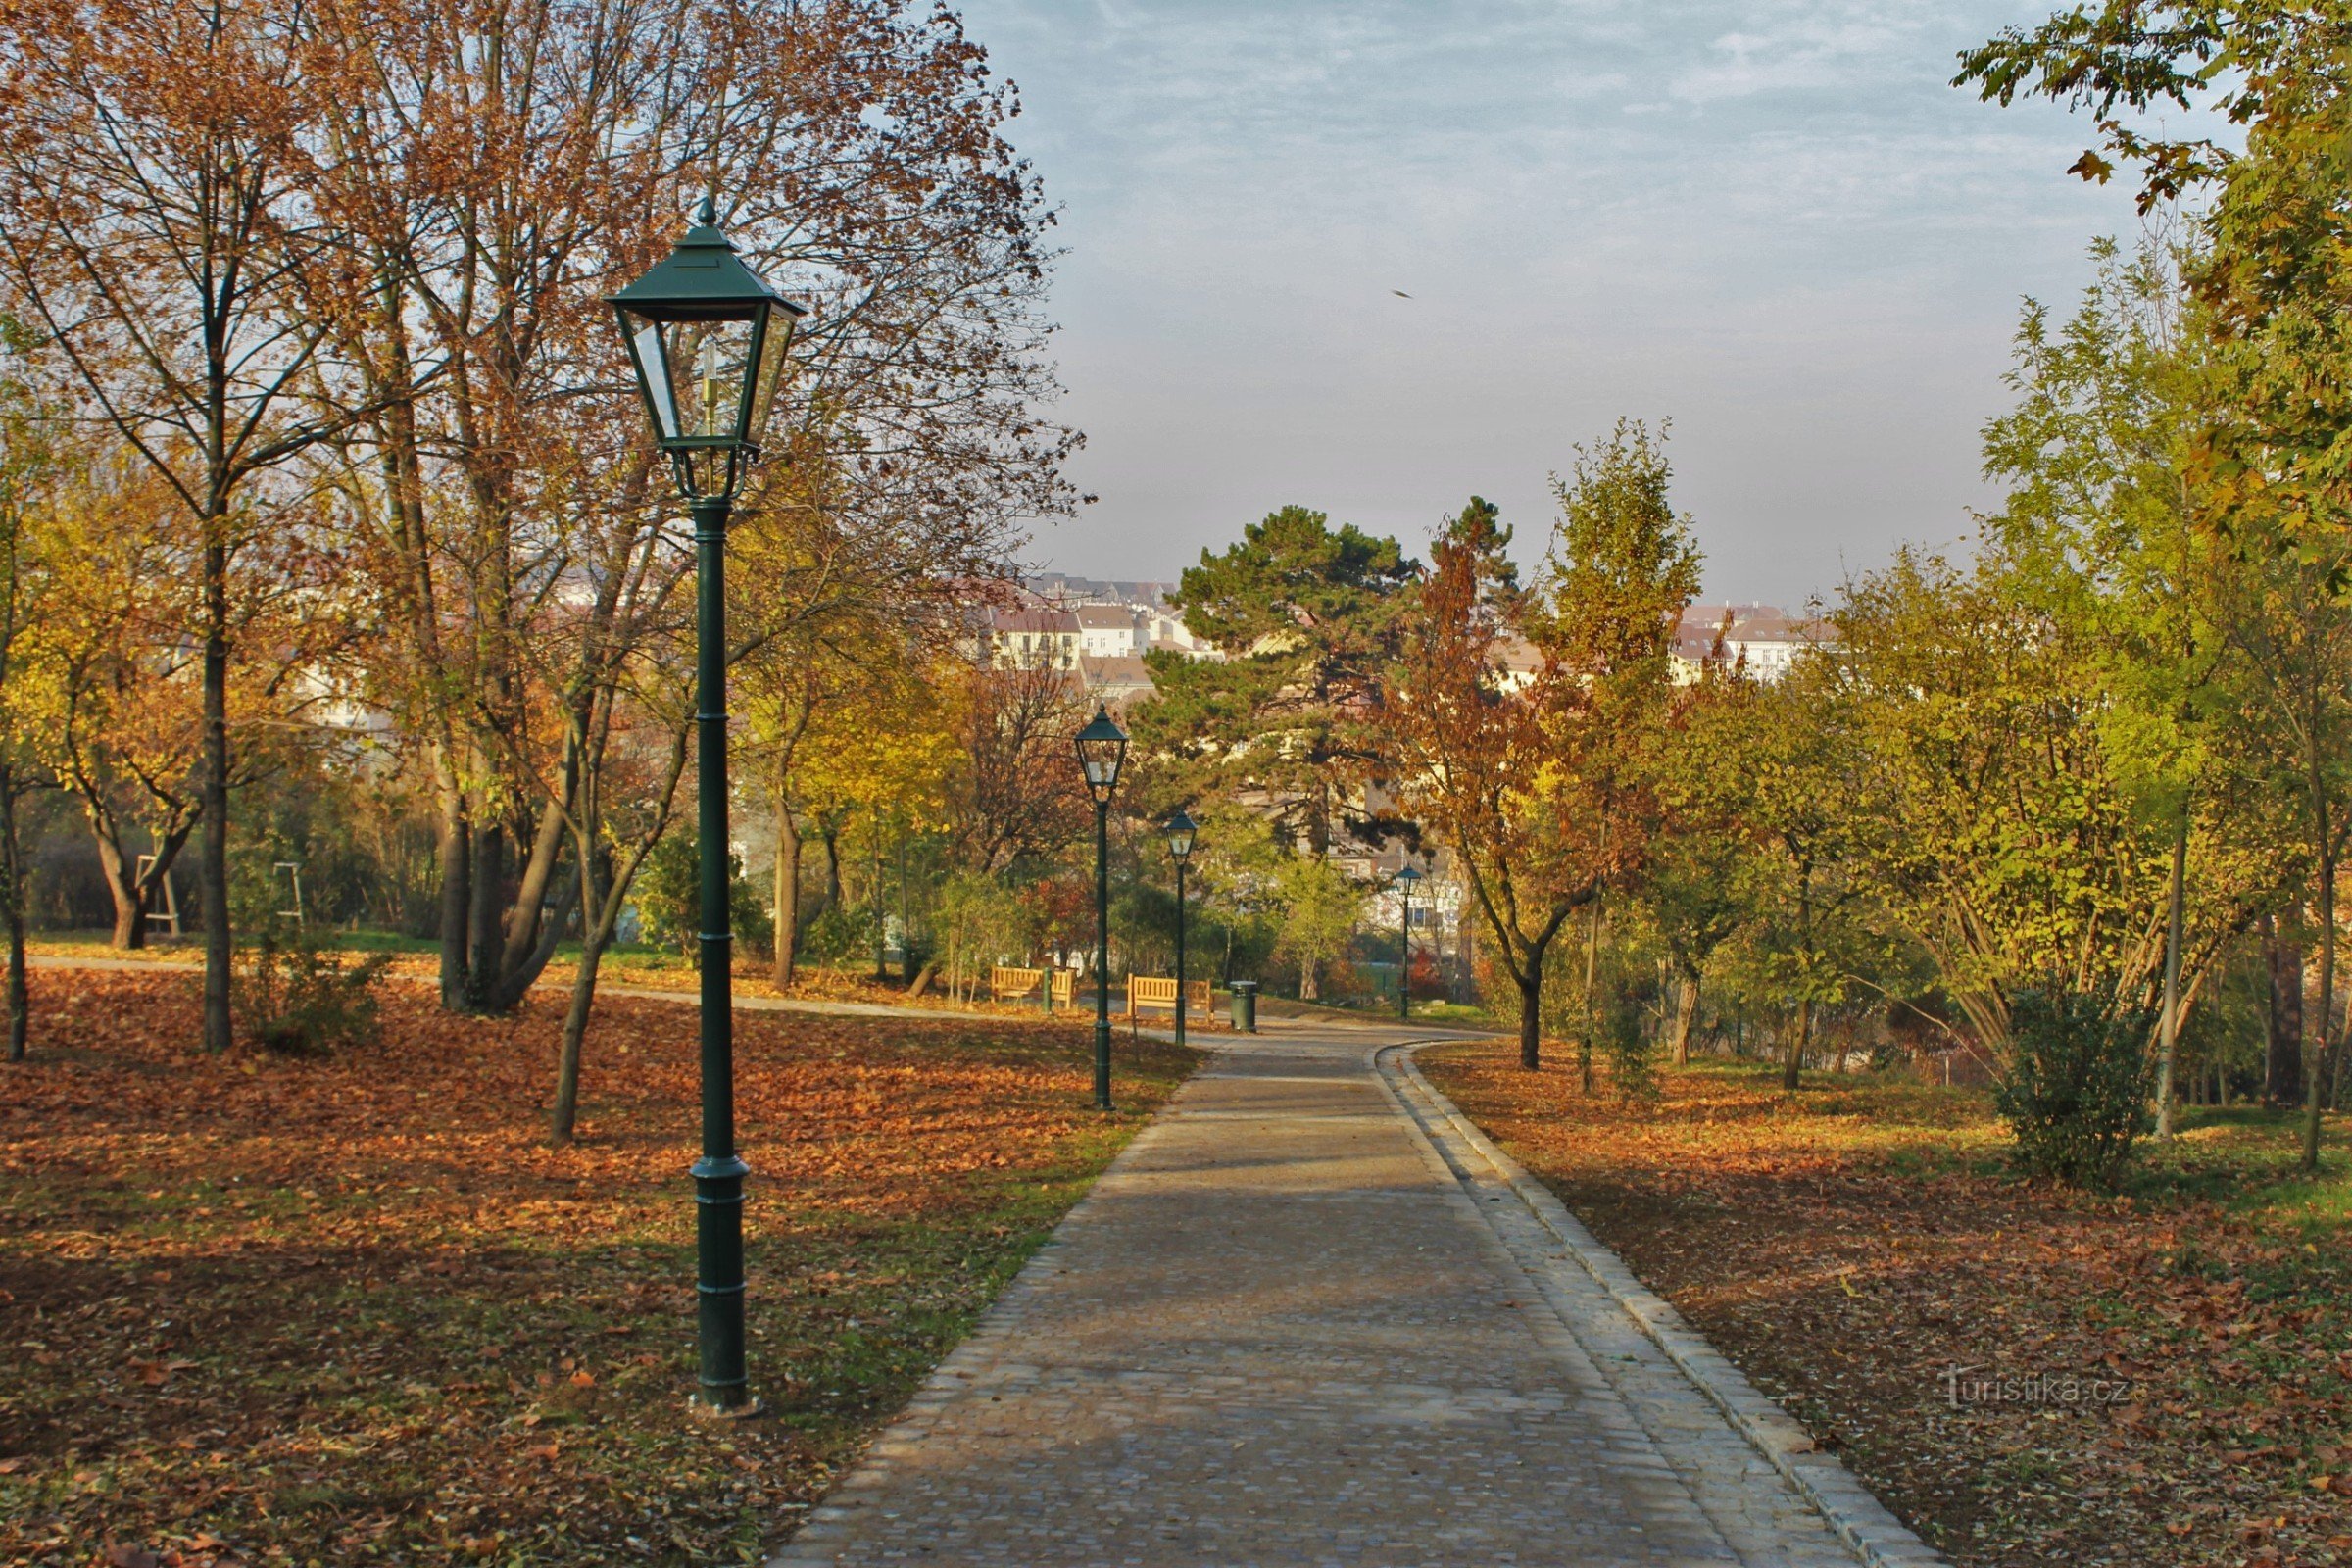 Brno-park Špilberk - drum de acces de nord